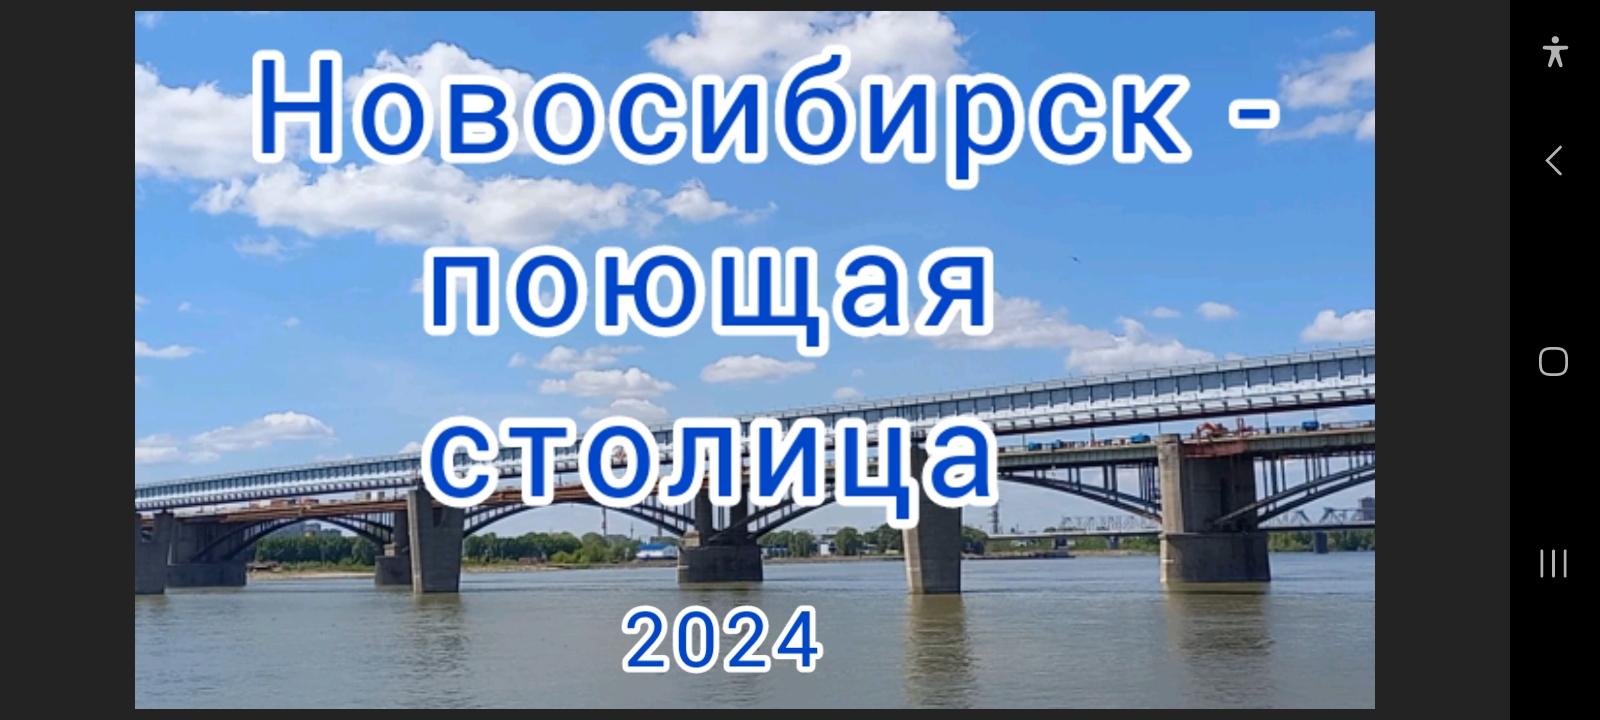 Новосибирск-поющая столица! ДДК им.Д. Н.Пичугина, Новосибирск, 2024.